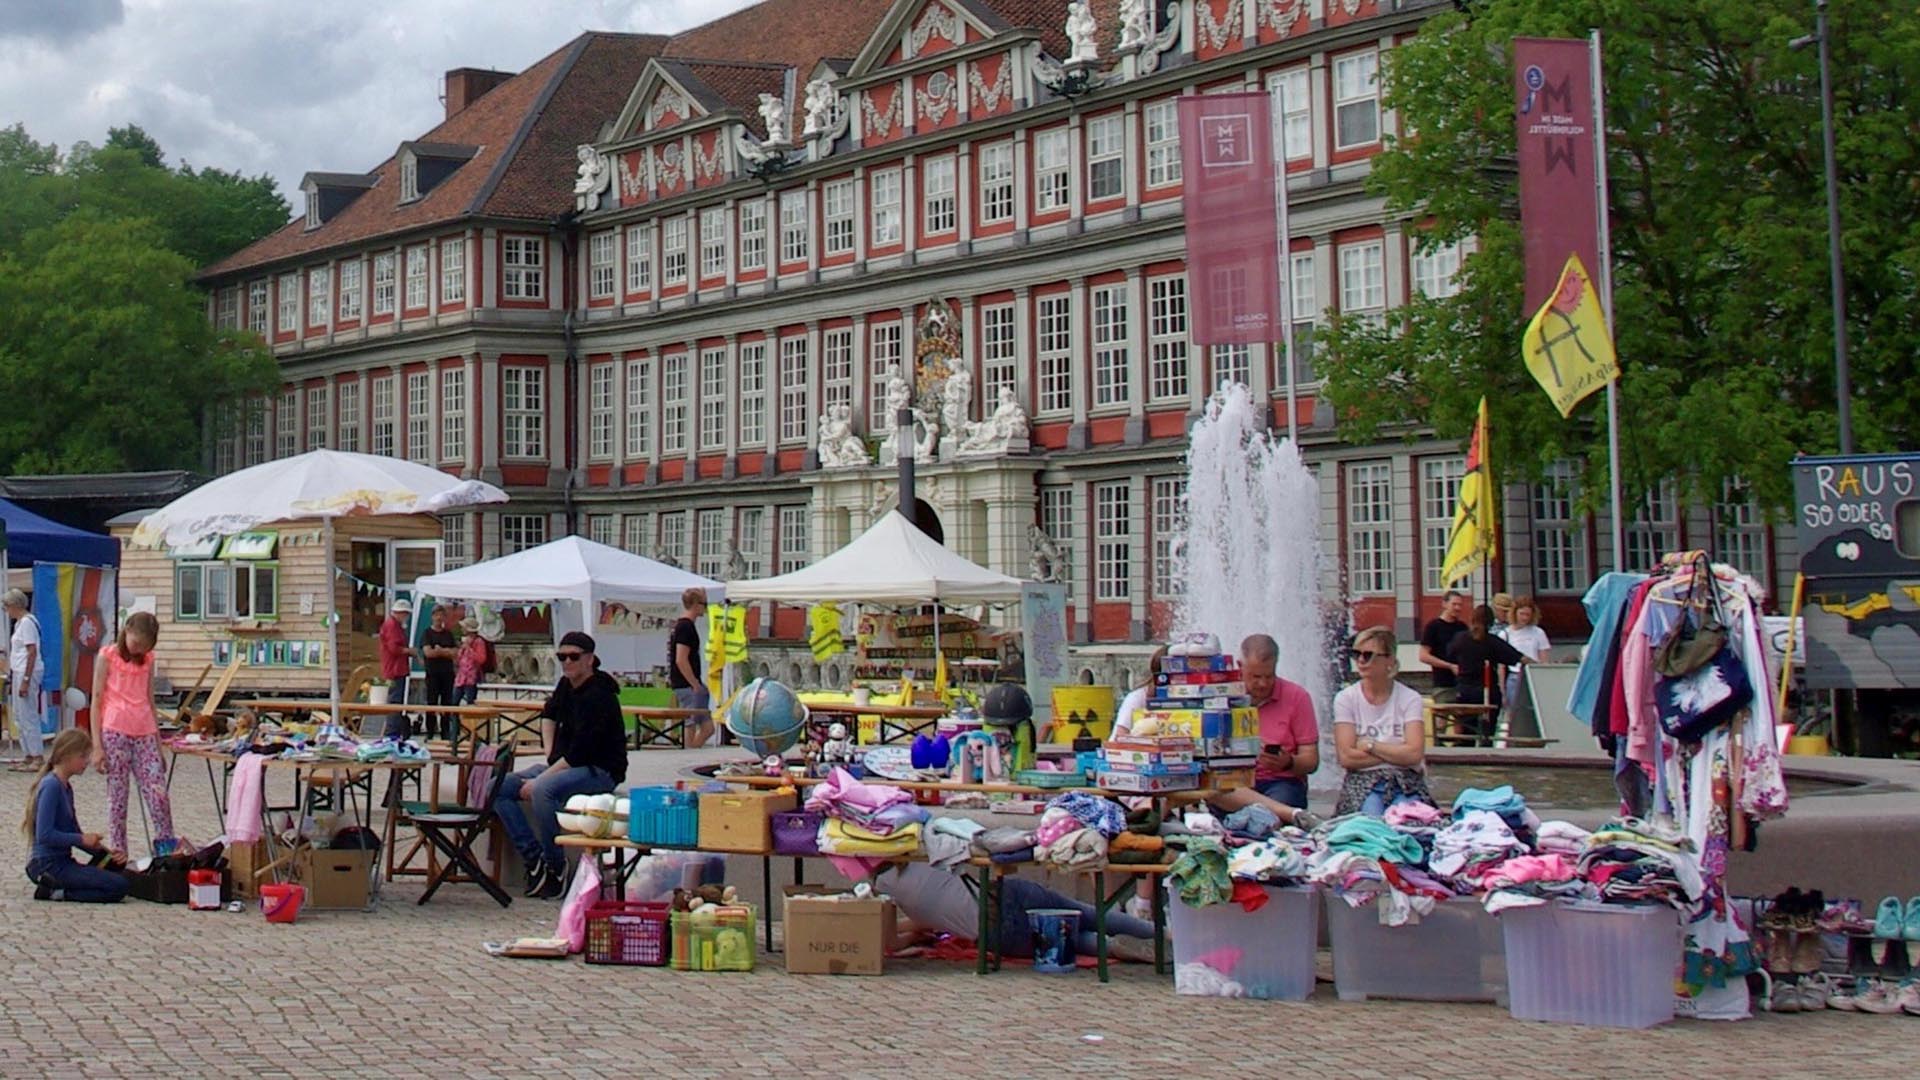 Auf einem Platz vor dem Wolfenbütteler Schloss, dessen Fassade im Hintergrund zu sehen ist, stehen einige Flohmarktstände mit angebotenen Gebrauchtwaren wie Kleidungsstücken.